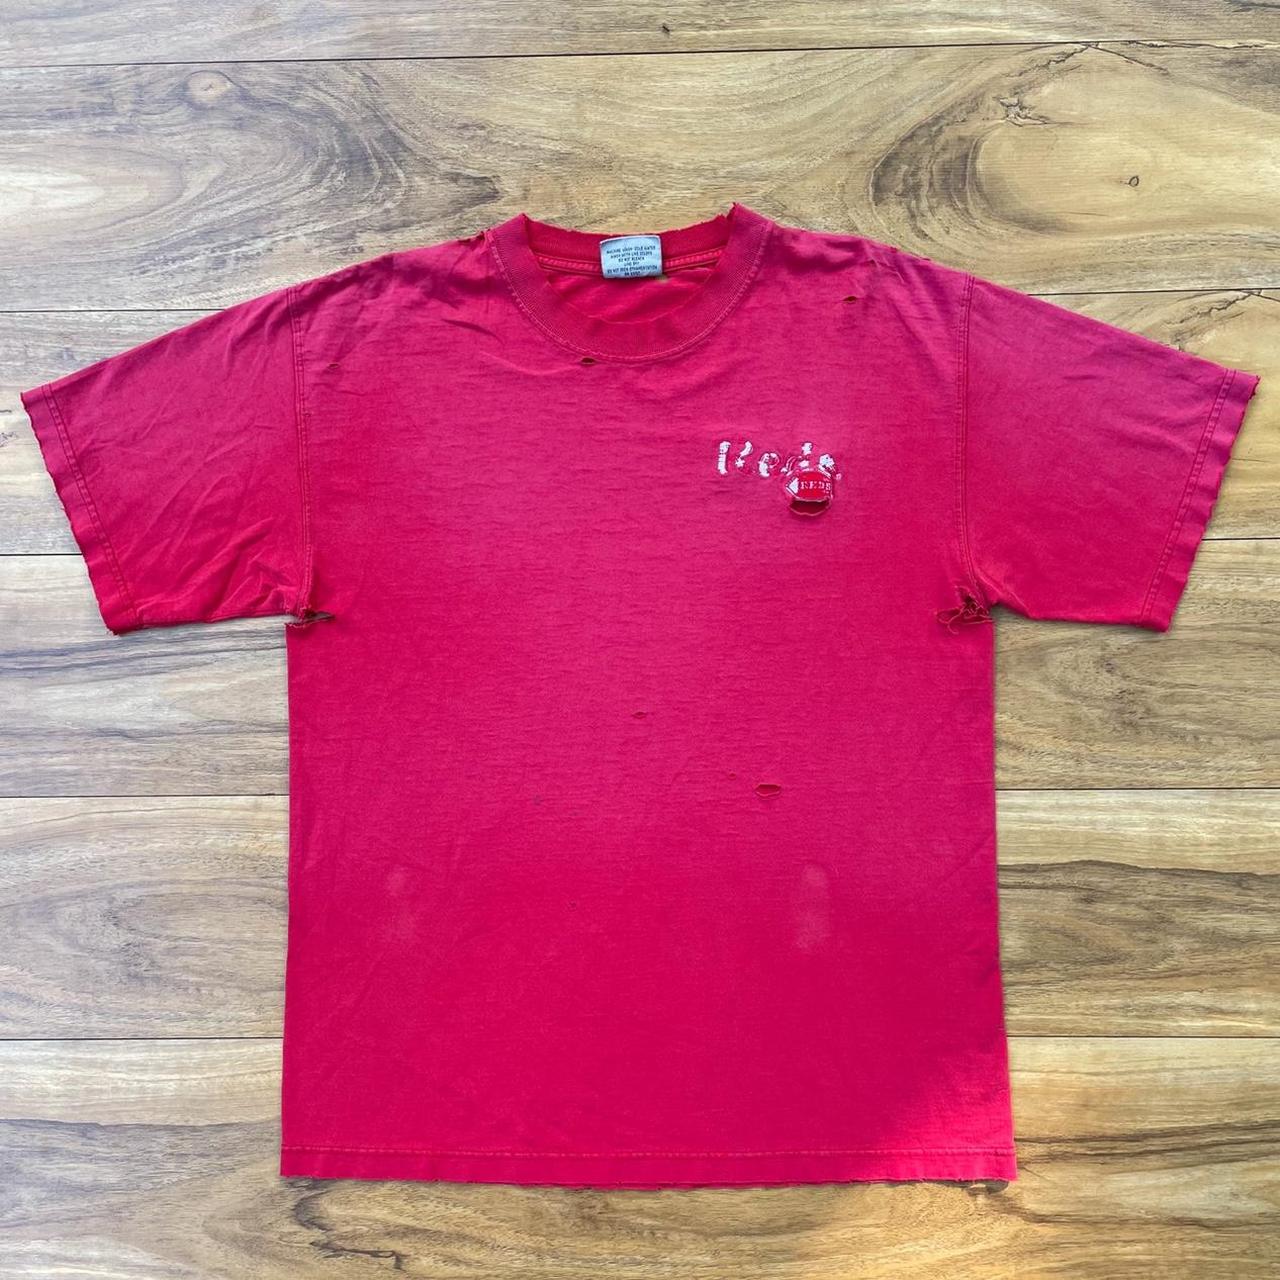 St. Louis Blues T-Shirt 🏒 Vintage 1996 NHL St. - Depop